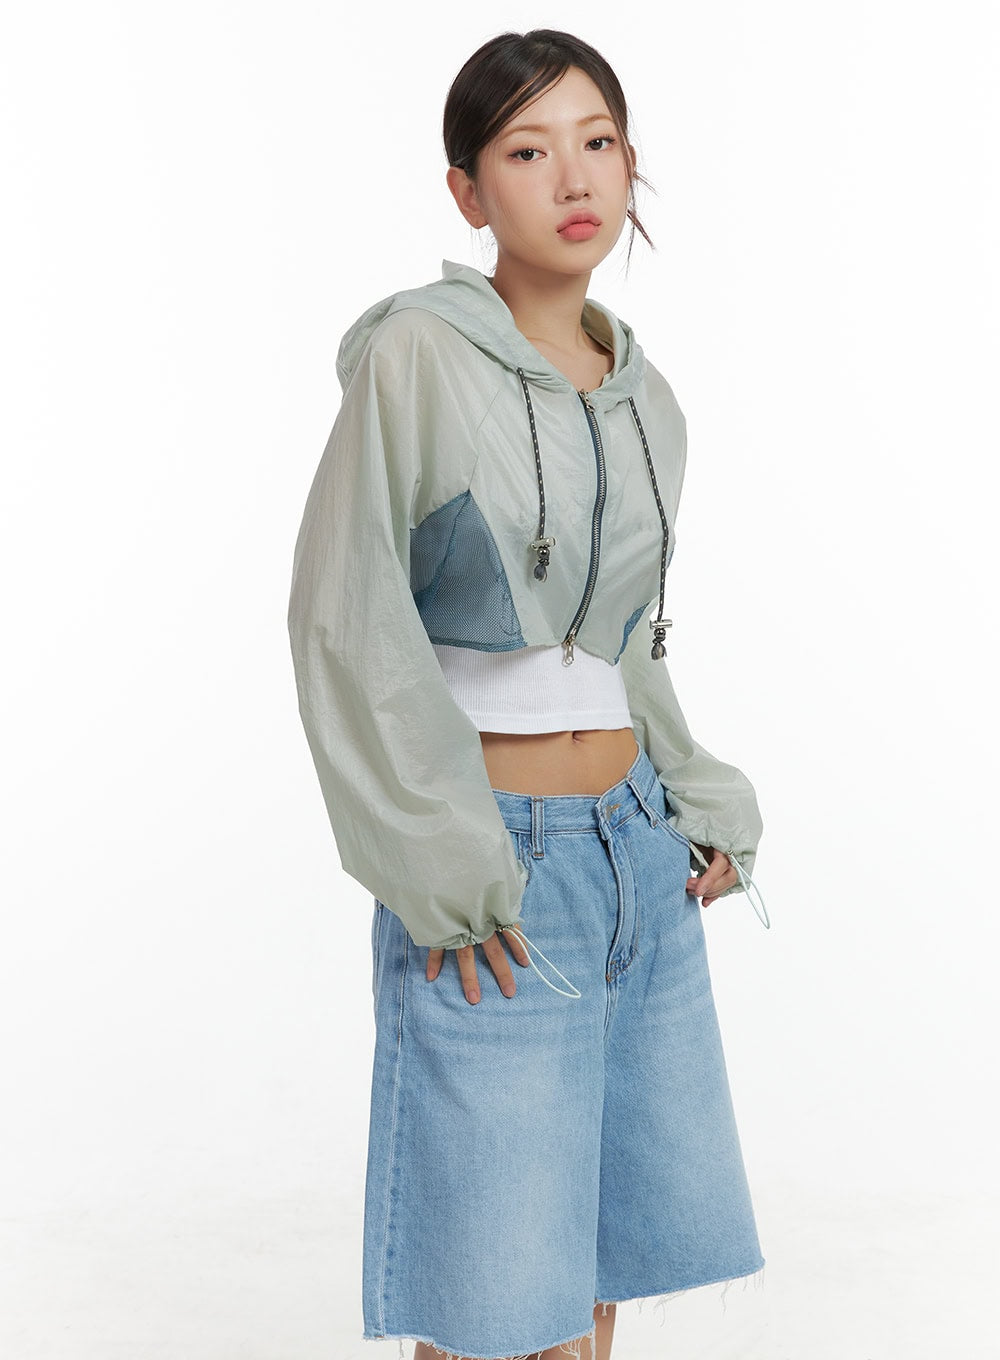 activewear-hoodie-crop-jacket-cl418 / Mint